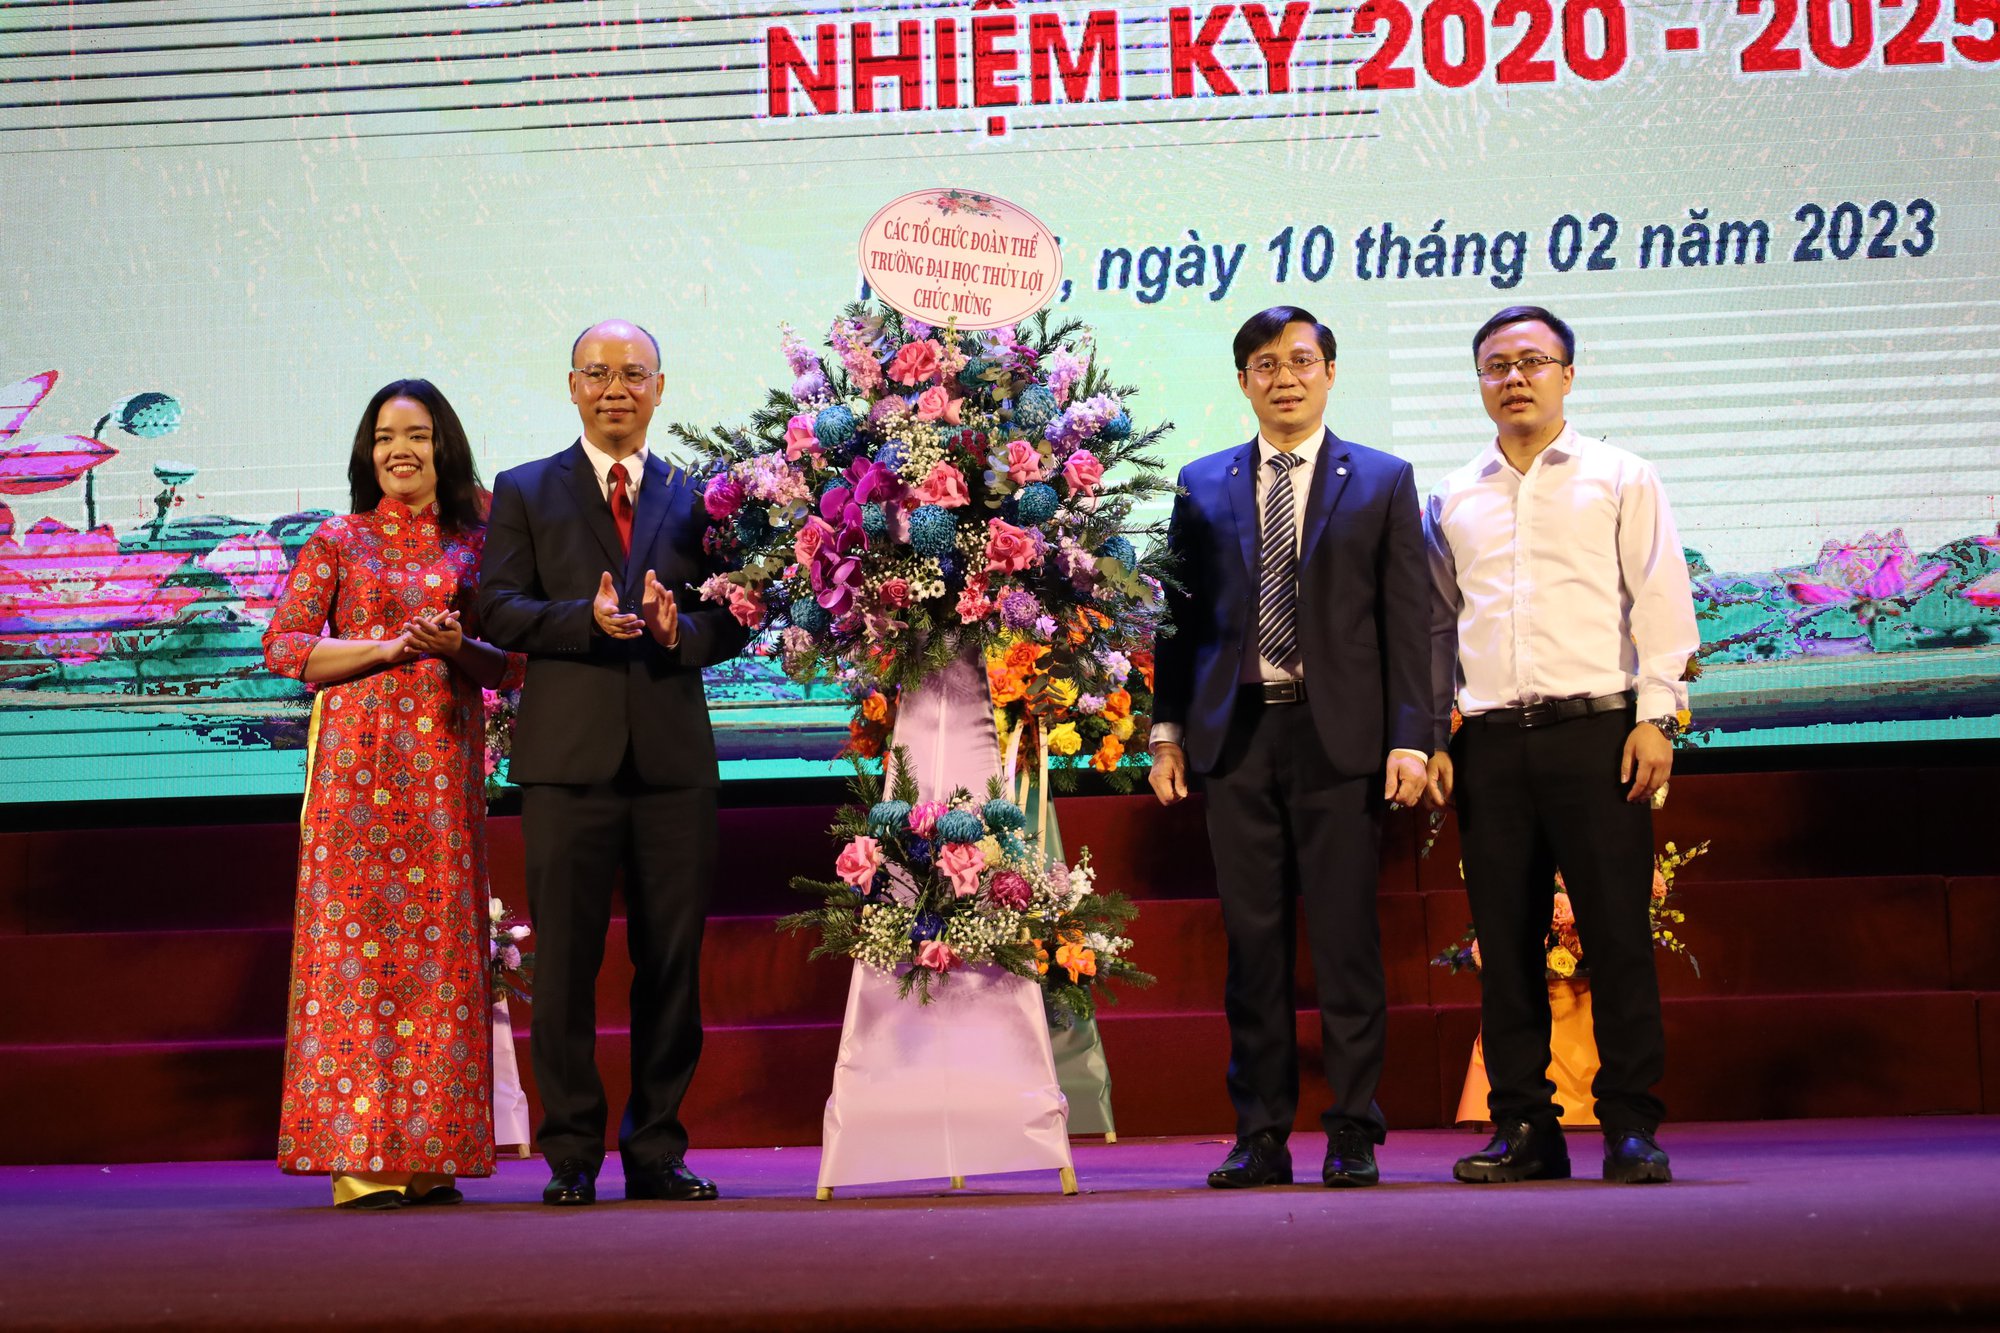 PGS Nguyễn Hữu Huế được bổ nhiệm làm Chủ tịch Hội đồng Trường Đại học Thủy lợi khoá IV, nhiệm kỳ 2020-2025 - Ảnh 8.